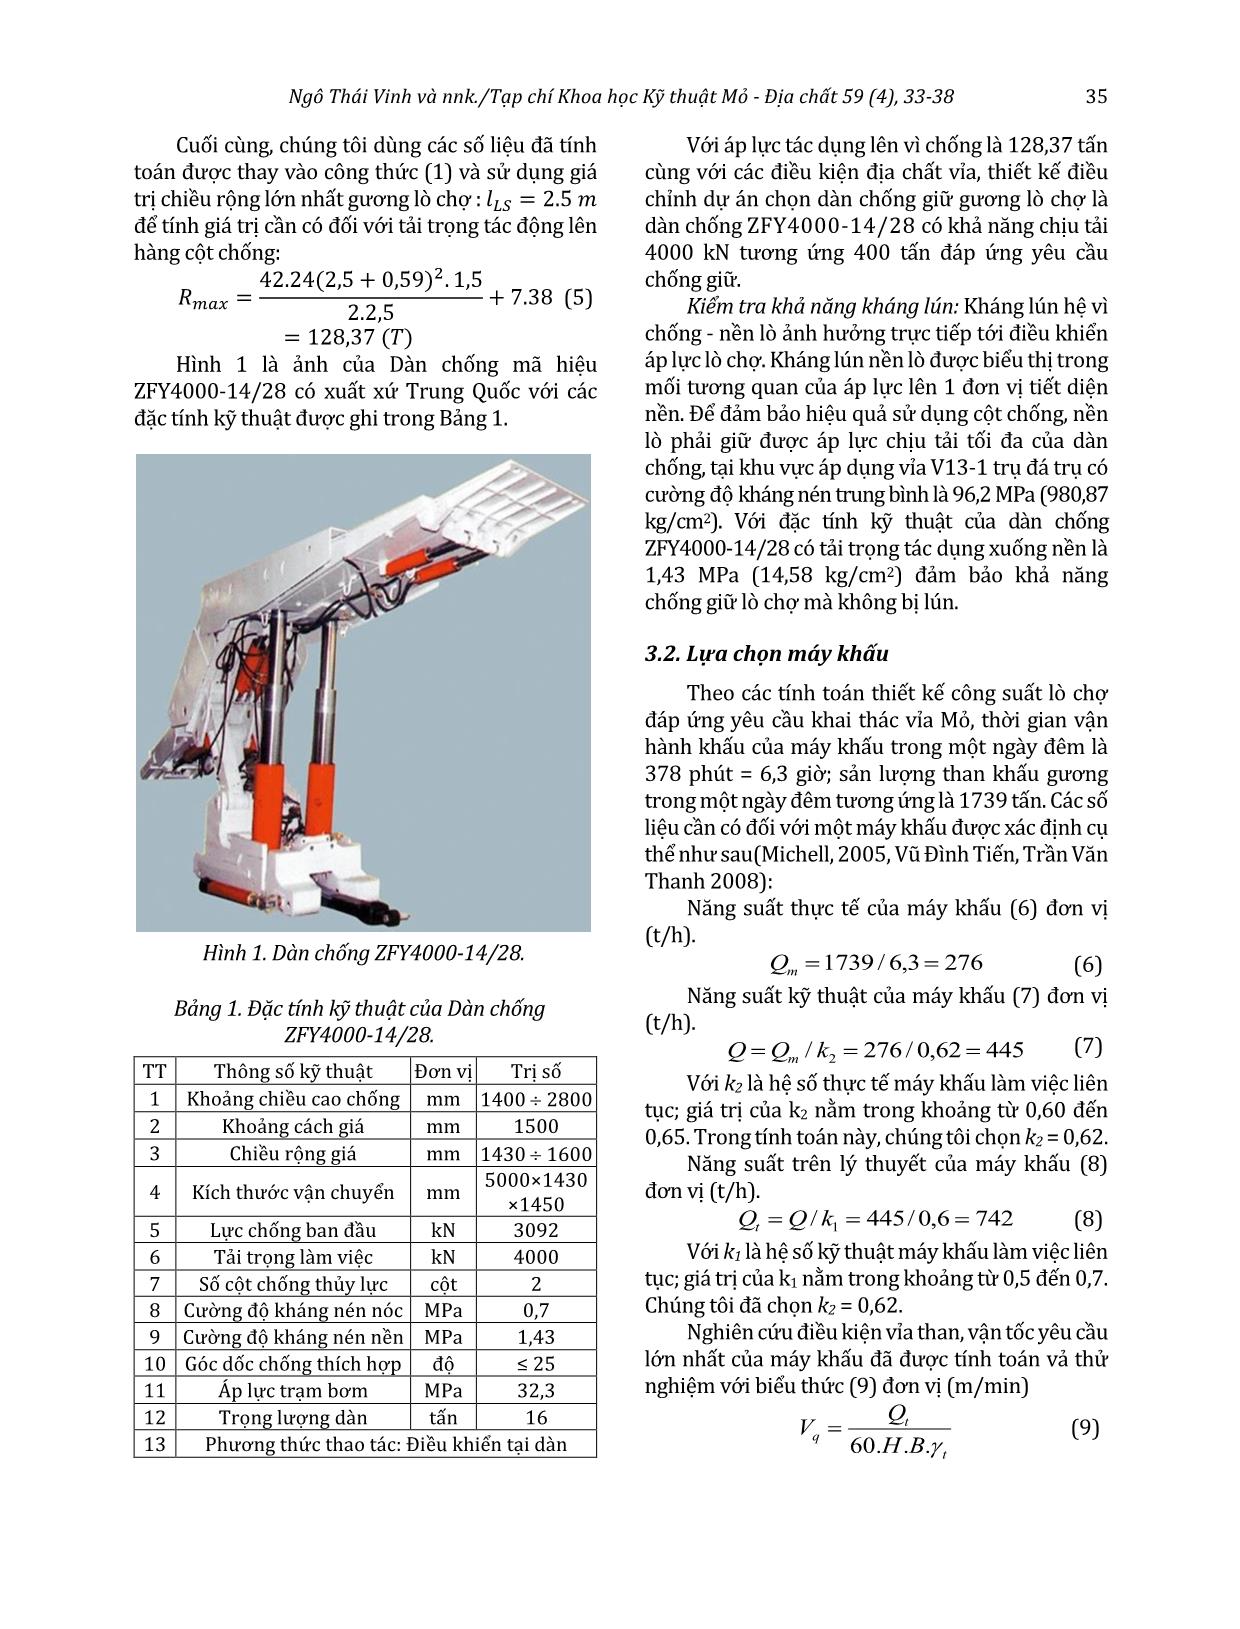 Lựa chọn tổ hợp thiết bị cơ giới hóa đồng bộ khai thác vỉa than V13-1 mỏ than Khe Chàm với công suất 400000 tấn/năm trang 3